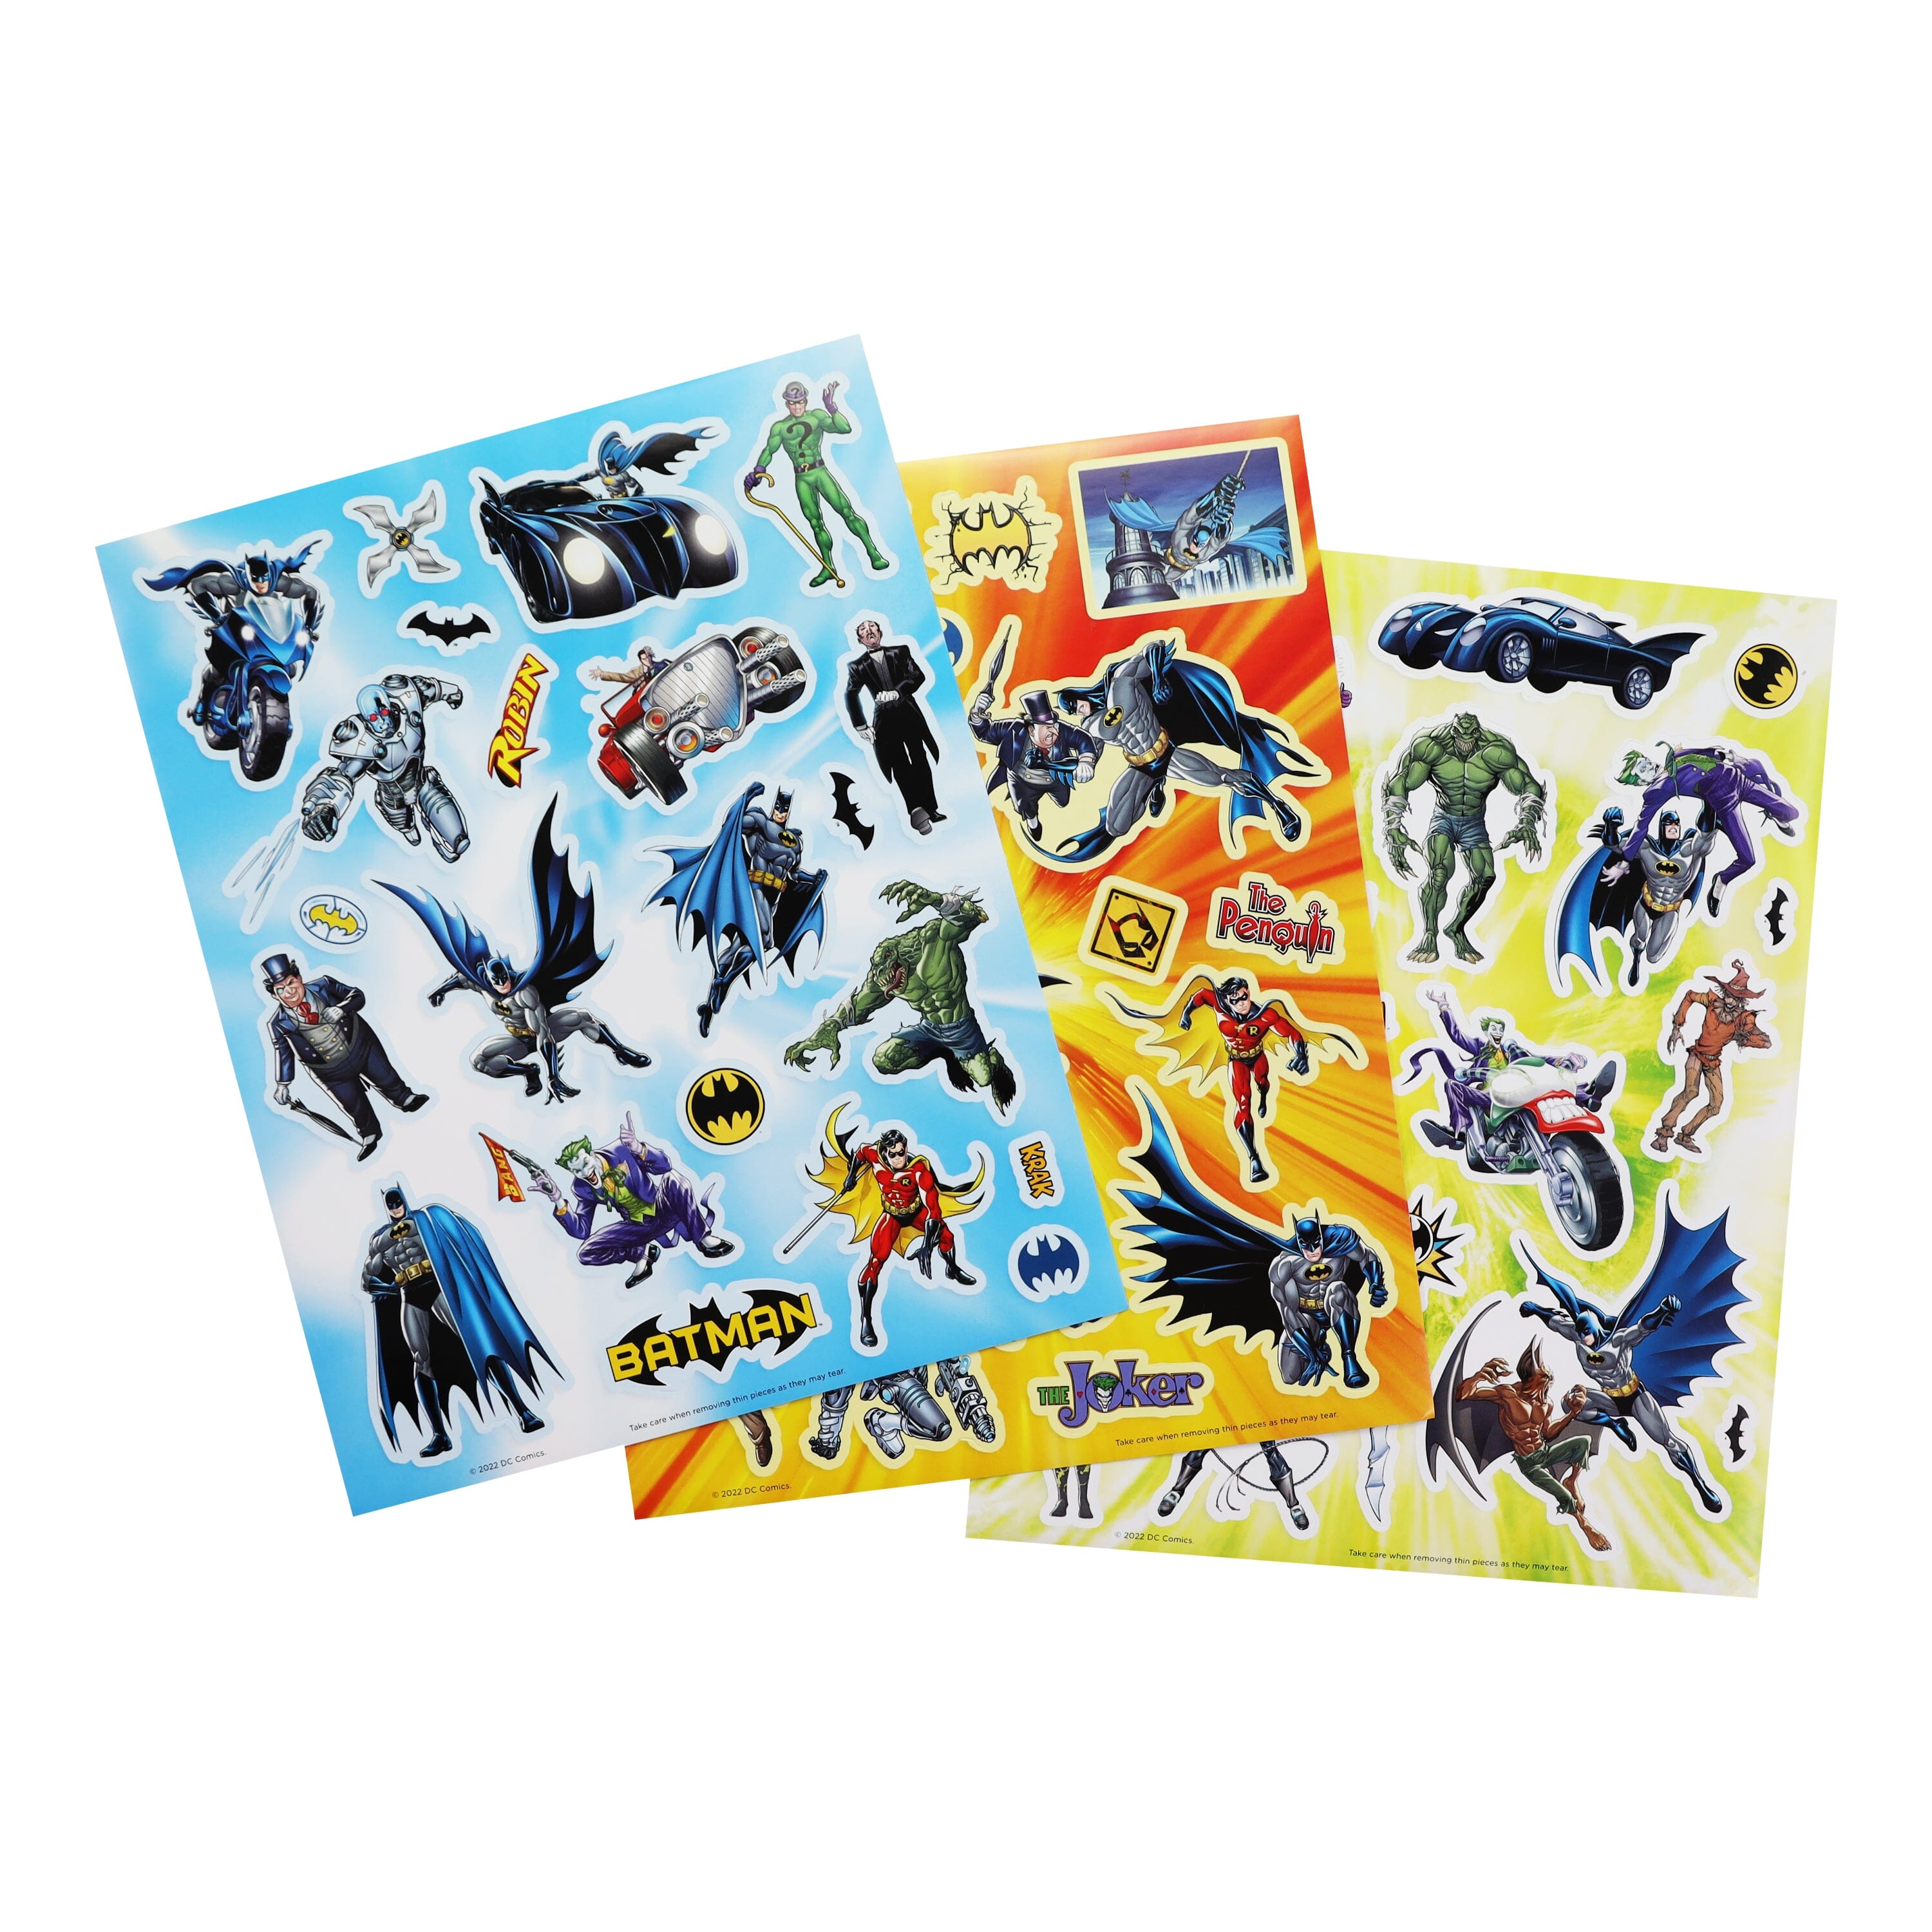 Batman Stickers Activity Set - Bundle Includes Batman Sticker Pad, Batman  Reward Stickers, Batman Coloring Book, and 2-sided Superhero Door Hanger